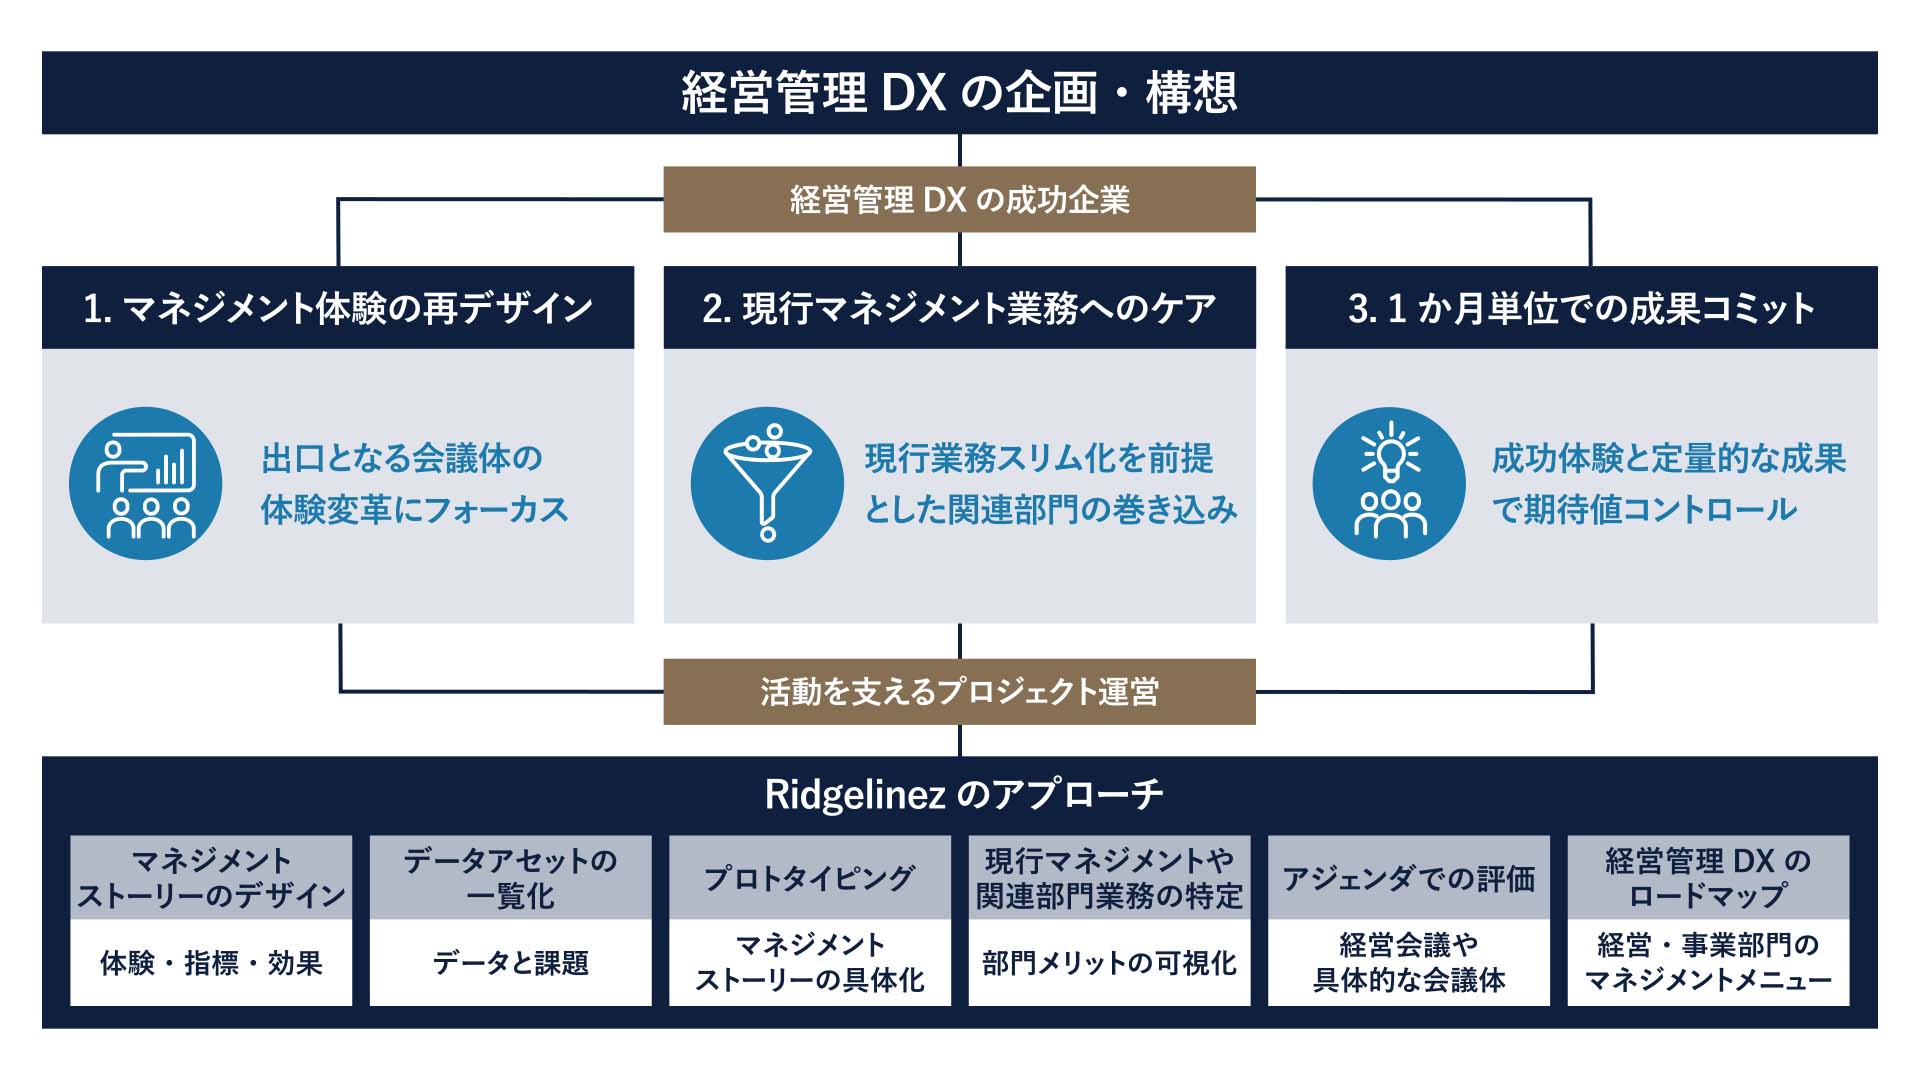 【図2】経営管理DX成功の取り組みとRidgelinezが推奨するアプローチ